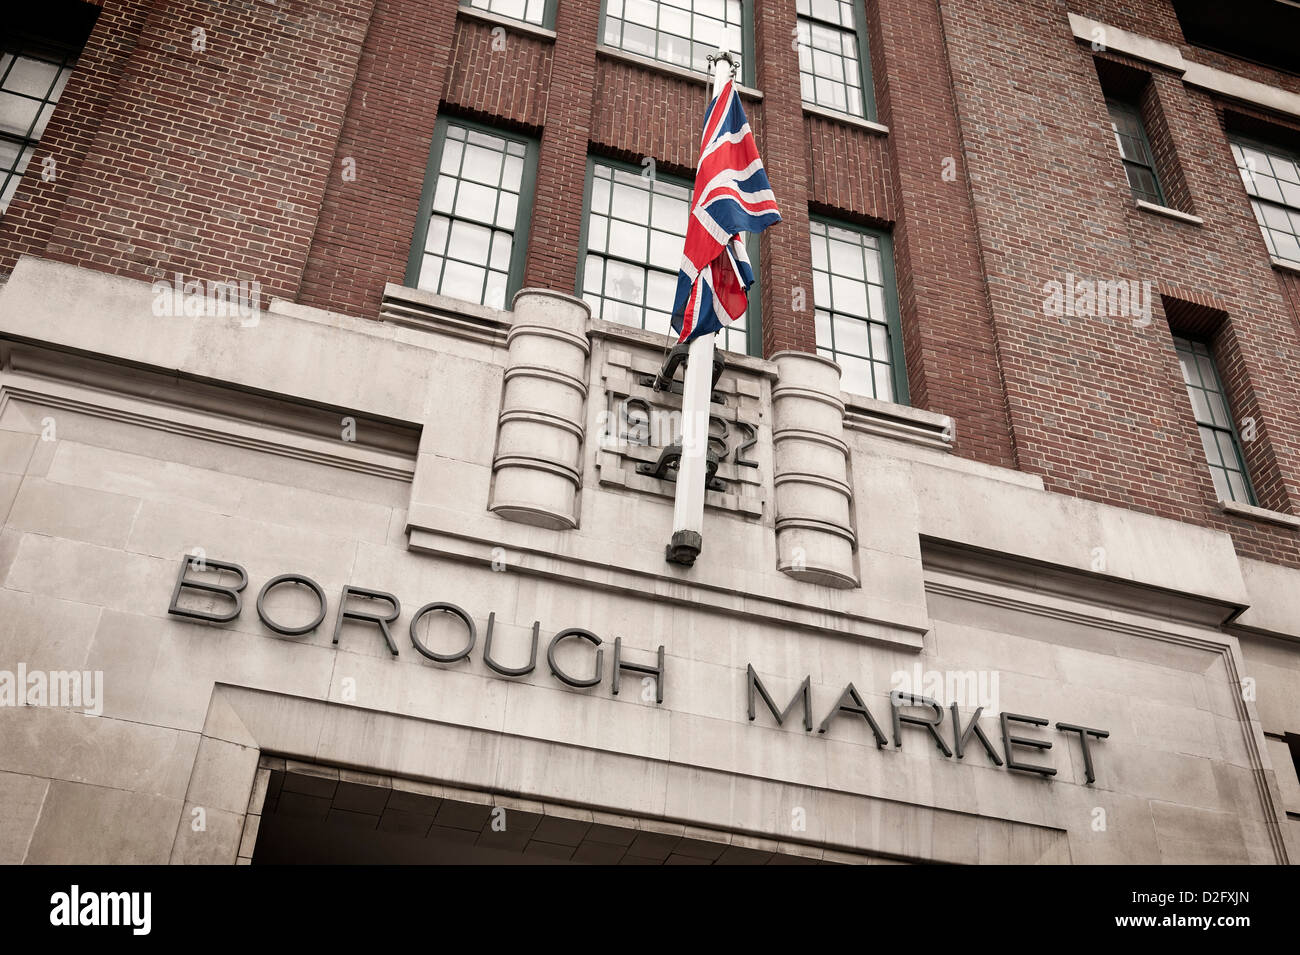 Entrée de Borough Market à Londres avec Union Jack flag flying, England UK Banque D'Images